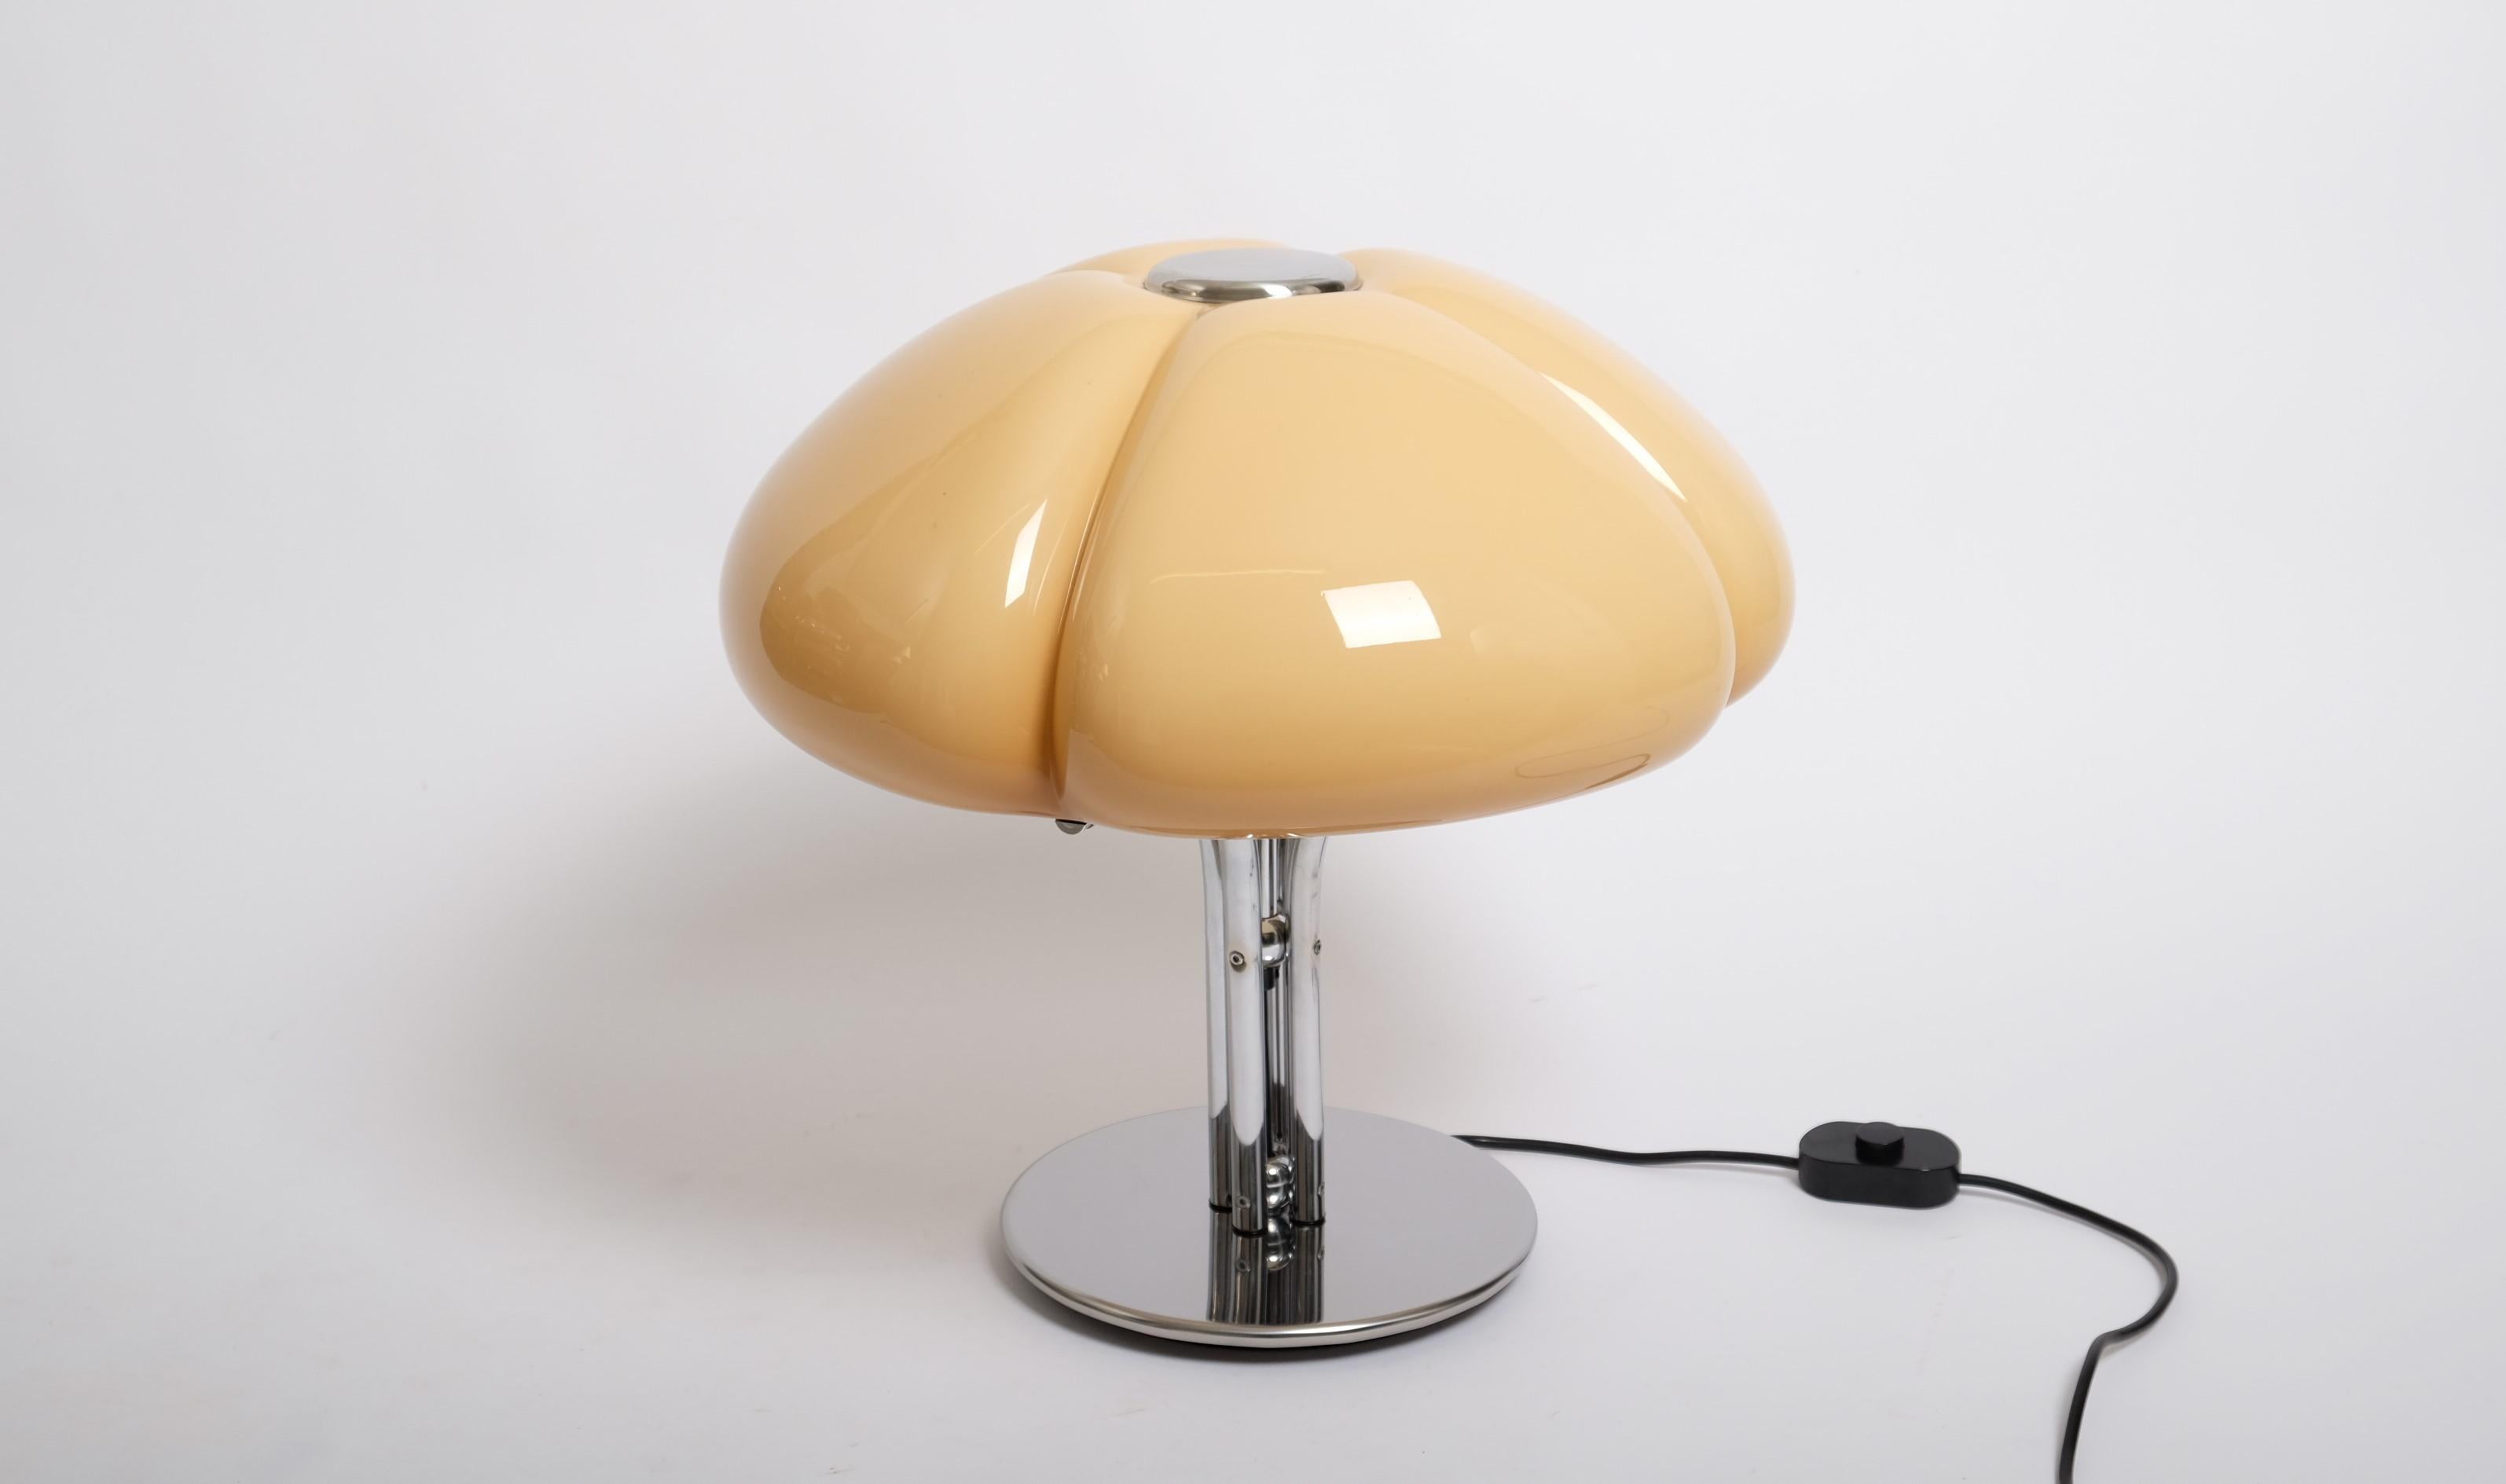 Quadrifoglio-Tischlampe von Gae Aulenti für Guzzini, Italien 1960er Jahre (Moderne der Mitte des Jahrhunderts)